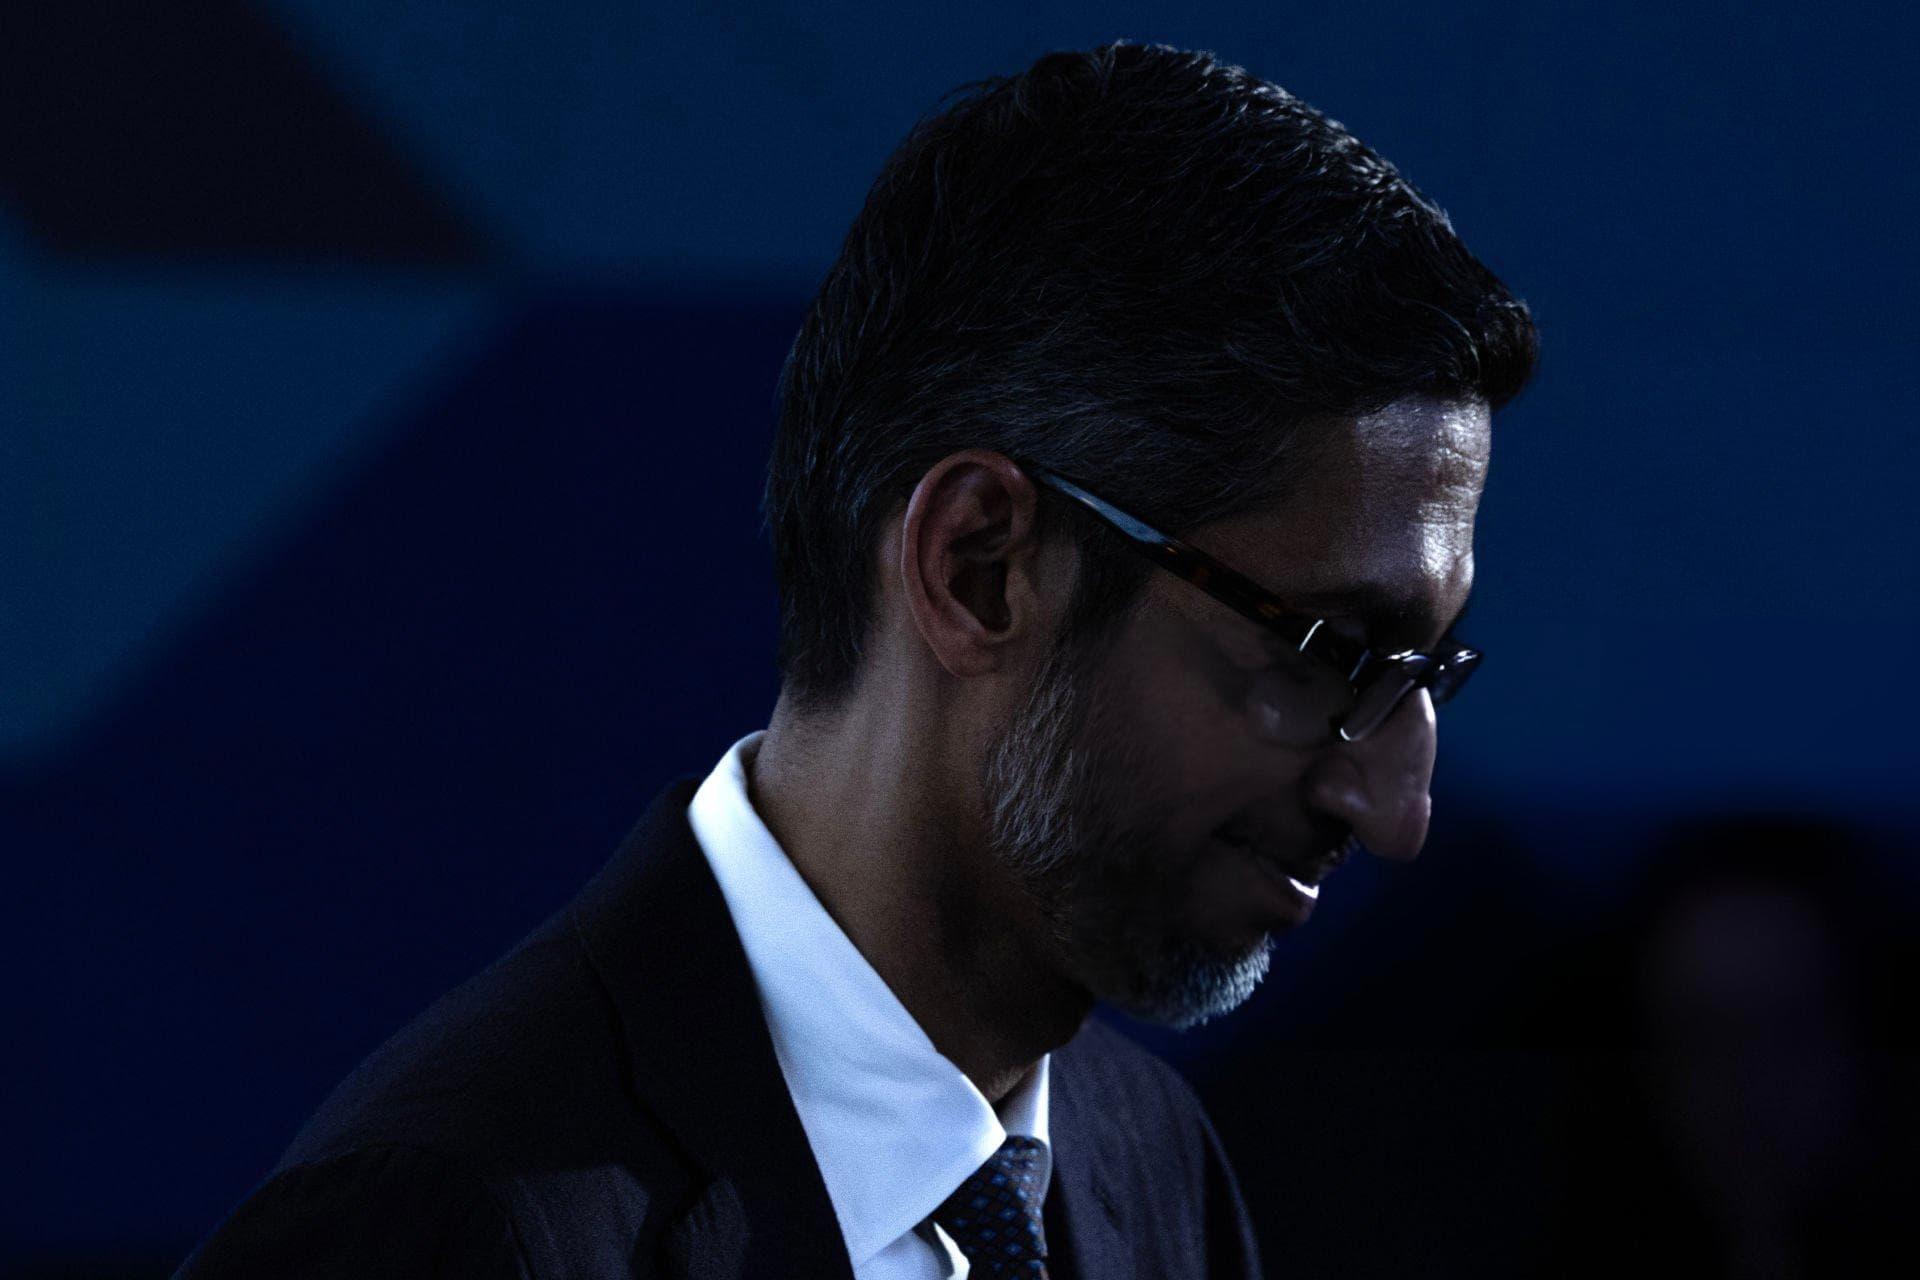 مرجع متخصصين ايران چهره ناراحت سوندار پيچاي / Sundar Pichai مديرعامل گوگل 